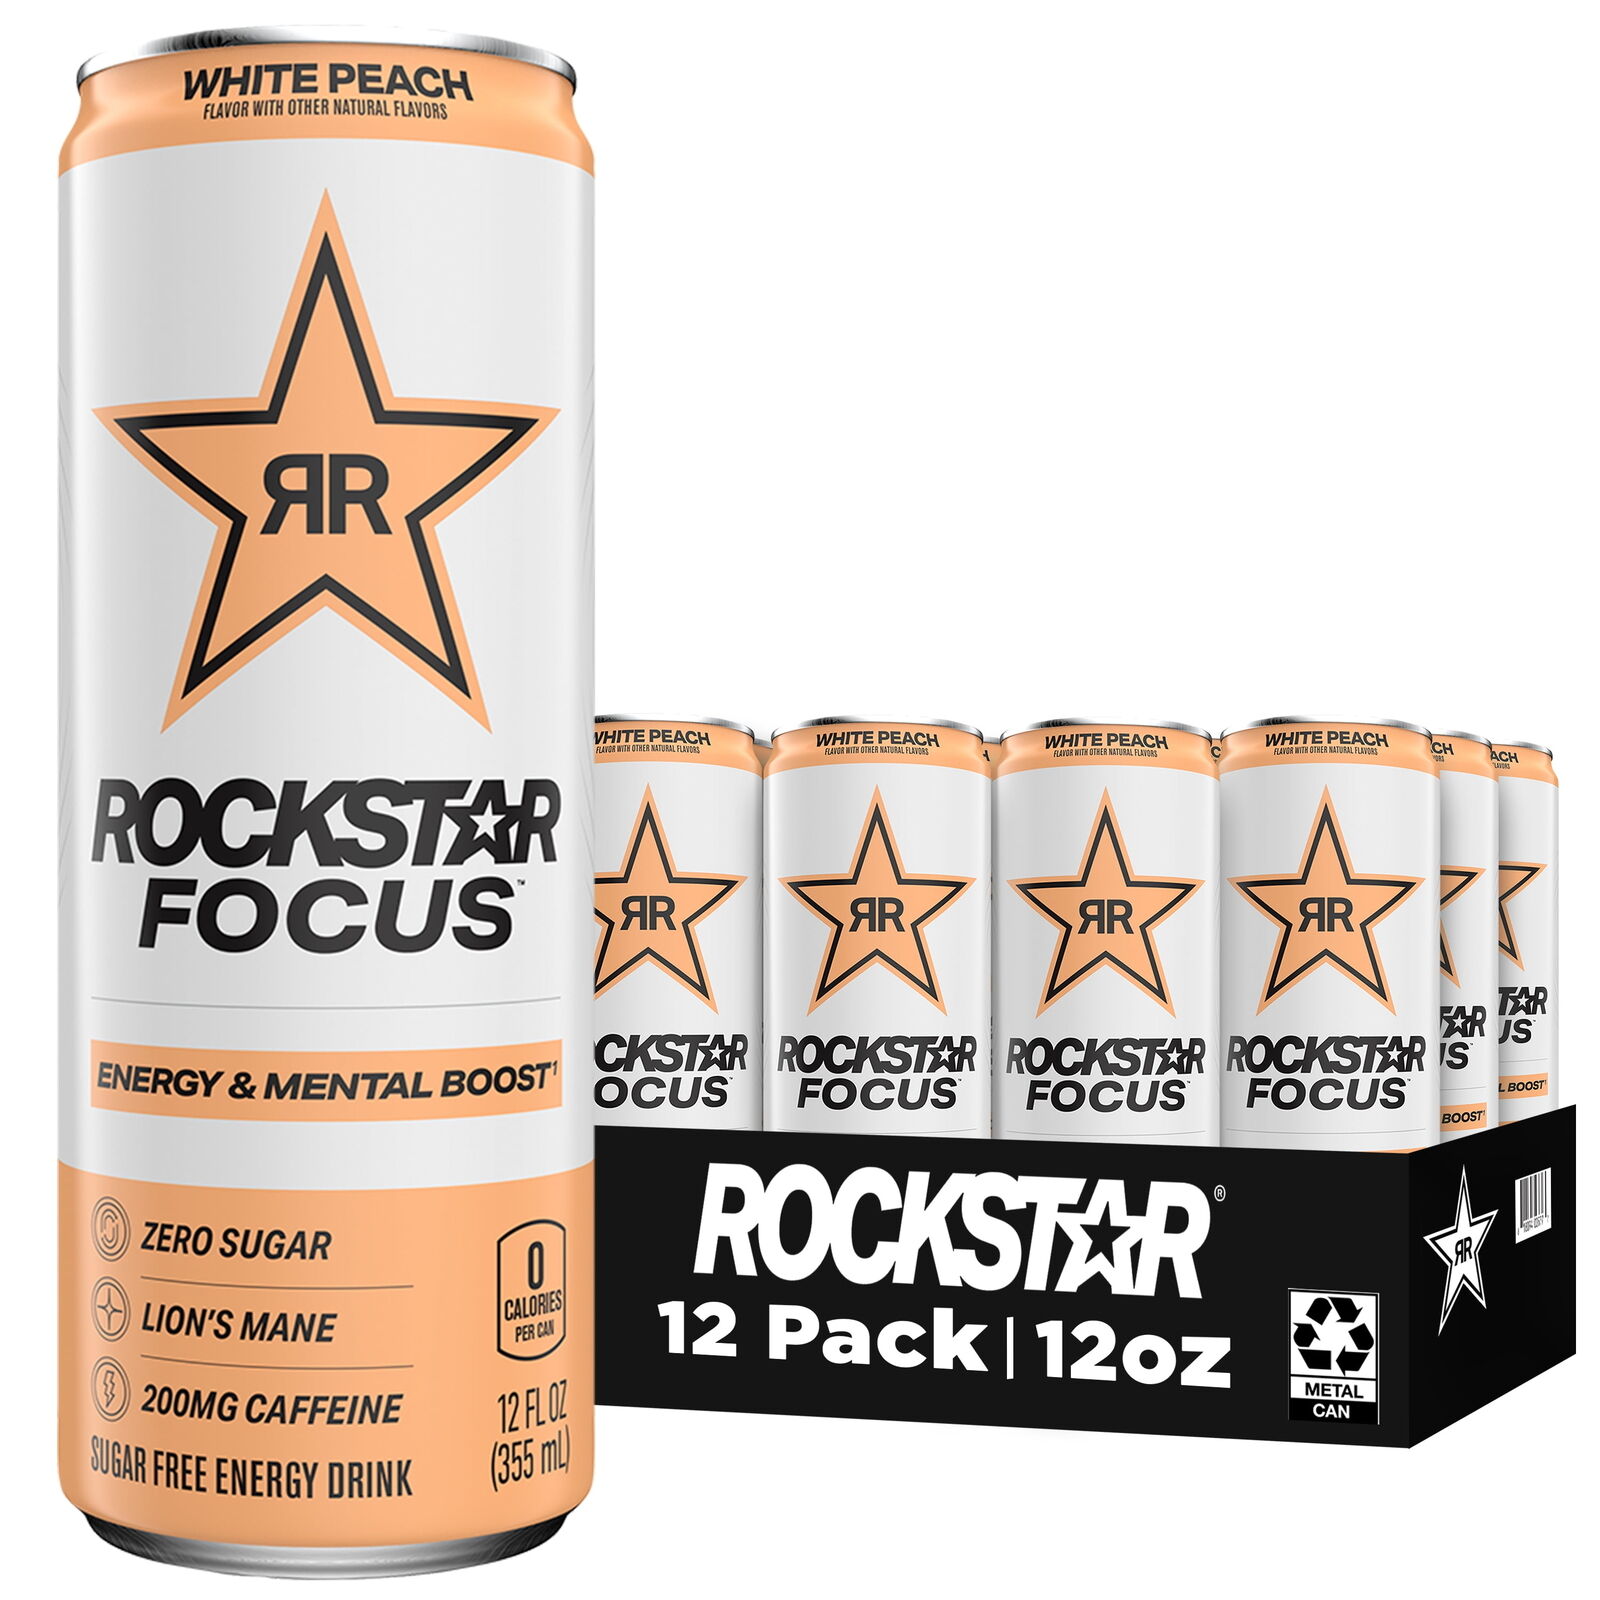 Rockstar Focus Zero Sugar Energy Drink, White Peach Flavor, Lion’s Mane